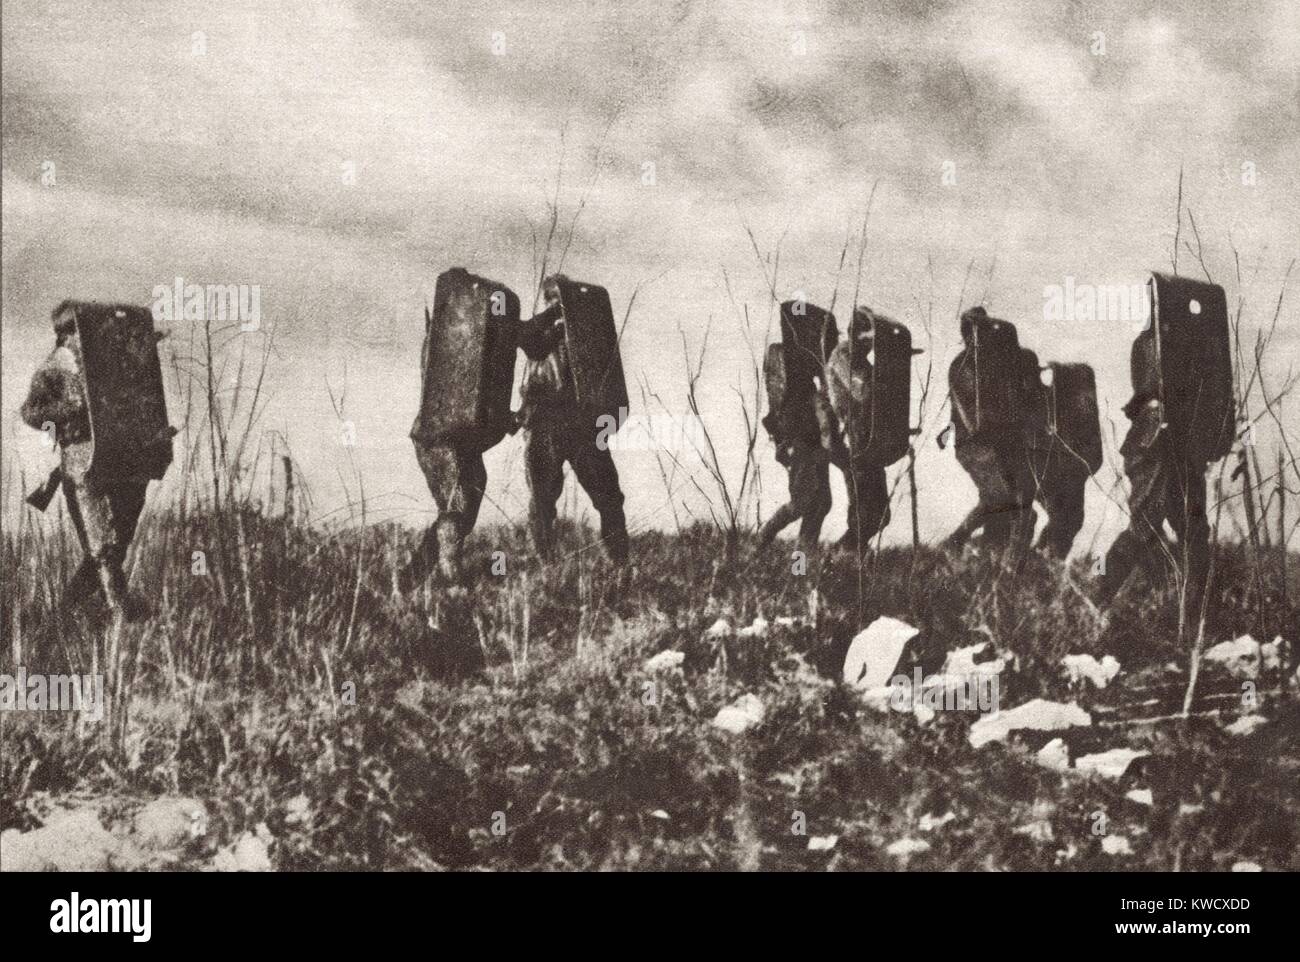 Weltkrieg 1 in der italienischen und der österreichischen Alpen. Italienische Soldaten tragen altmodische Head und Body Armor, wie sie gegen österreichische Maschinengewehrfeuer bewegen. Ca. 1915-18. (BSLOC 2013 1 23) Stockfoto